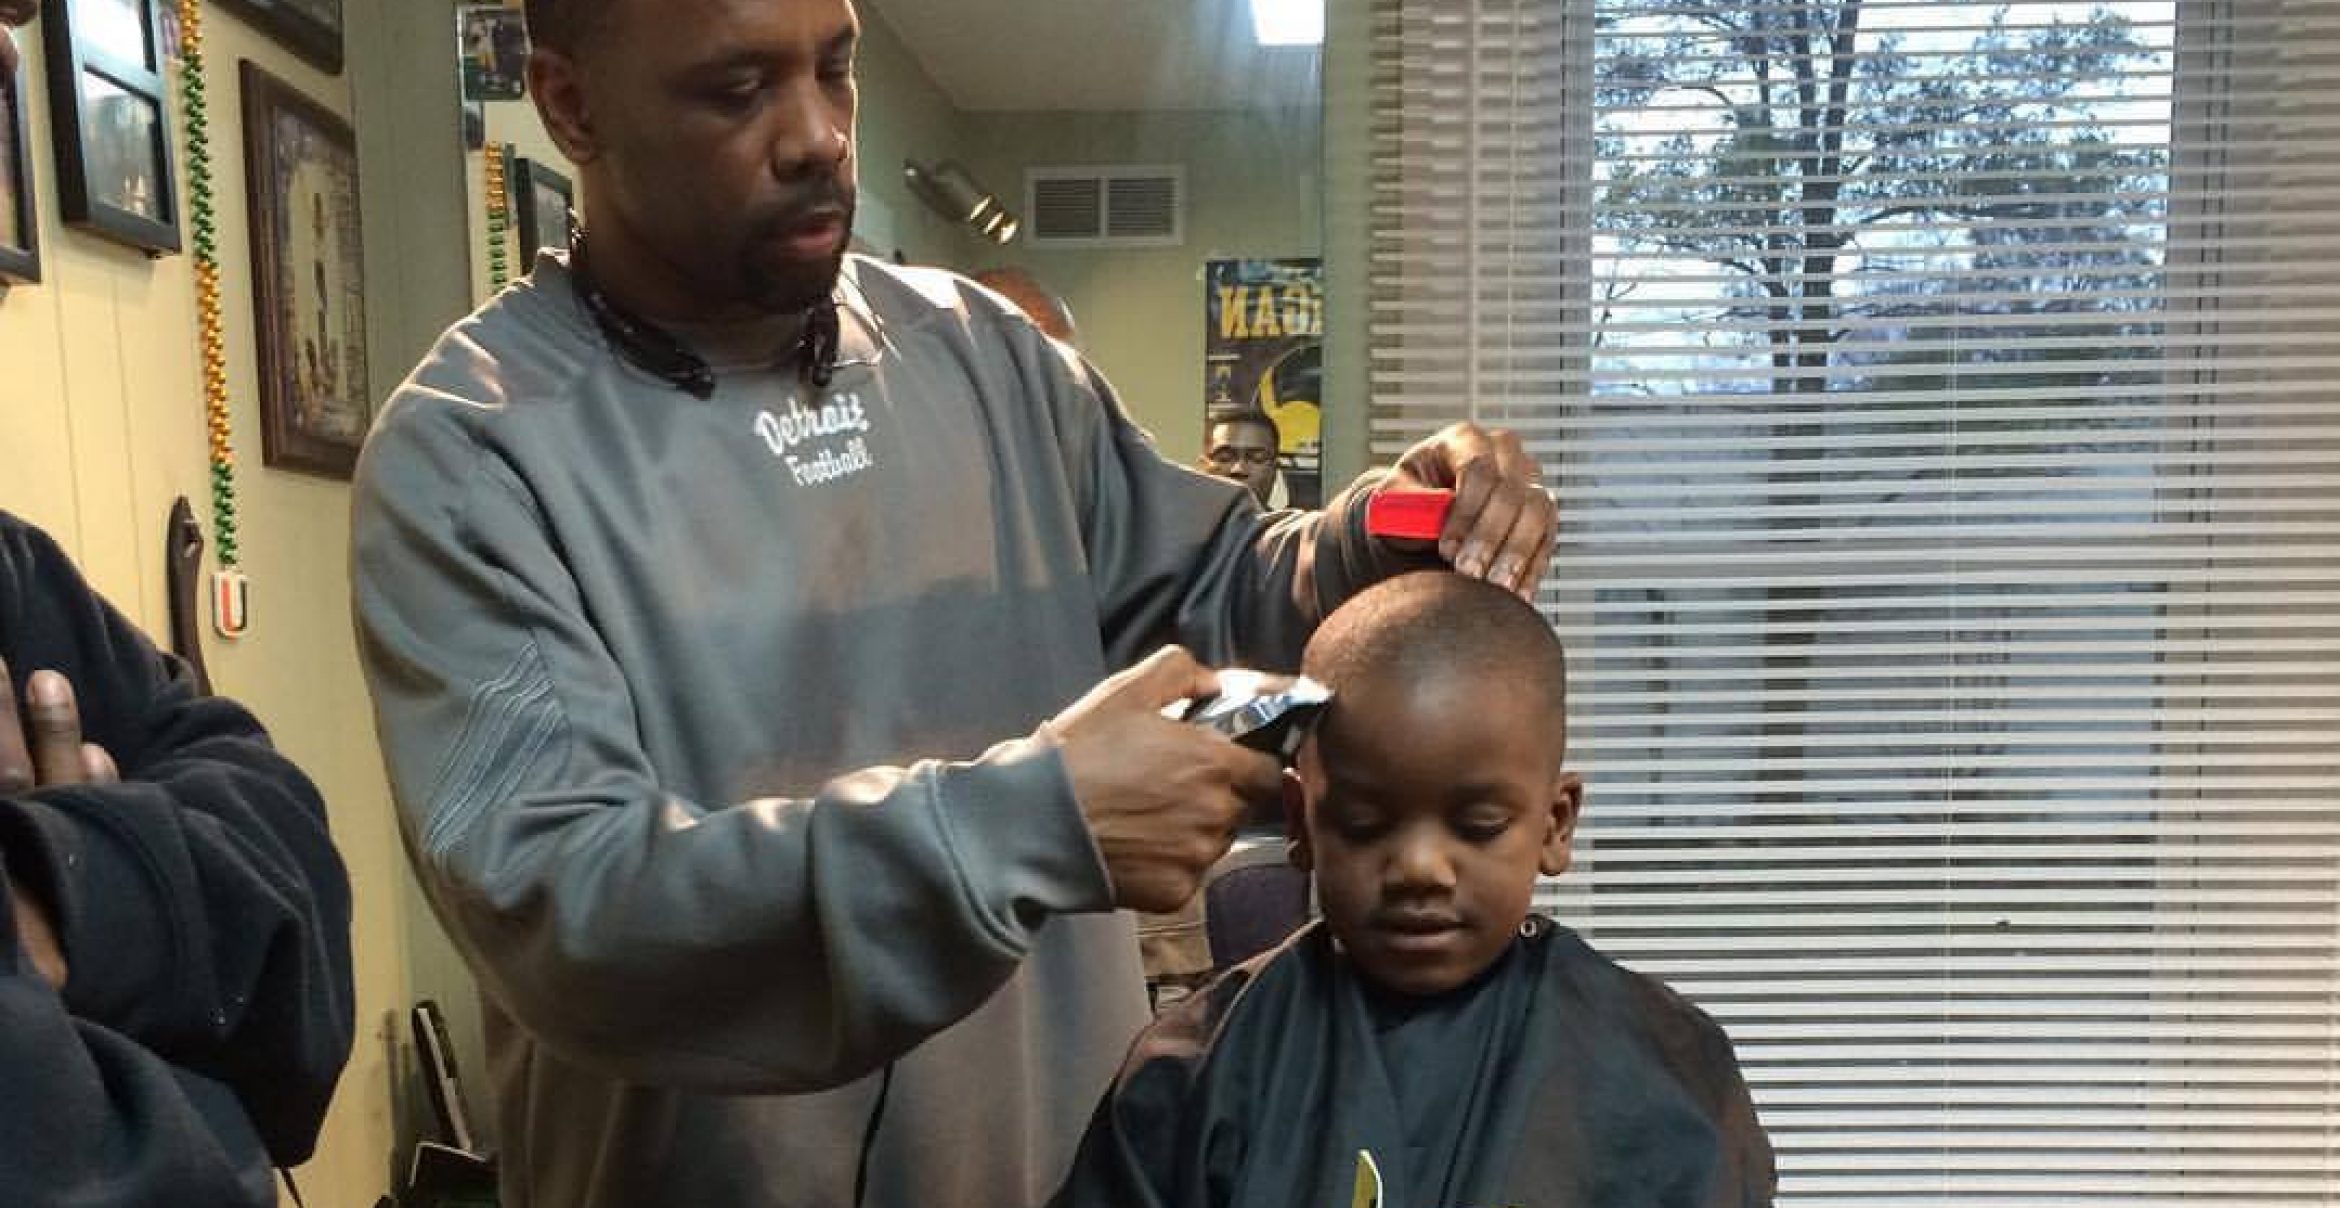 Lesestunde beim Friseur: In diesem Salon kriegen Kinder für lautes Lesen Geld zurück